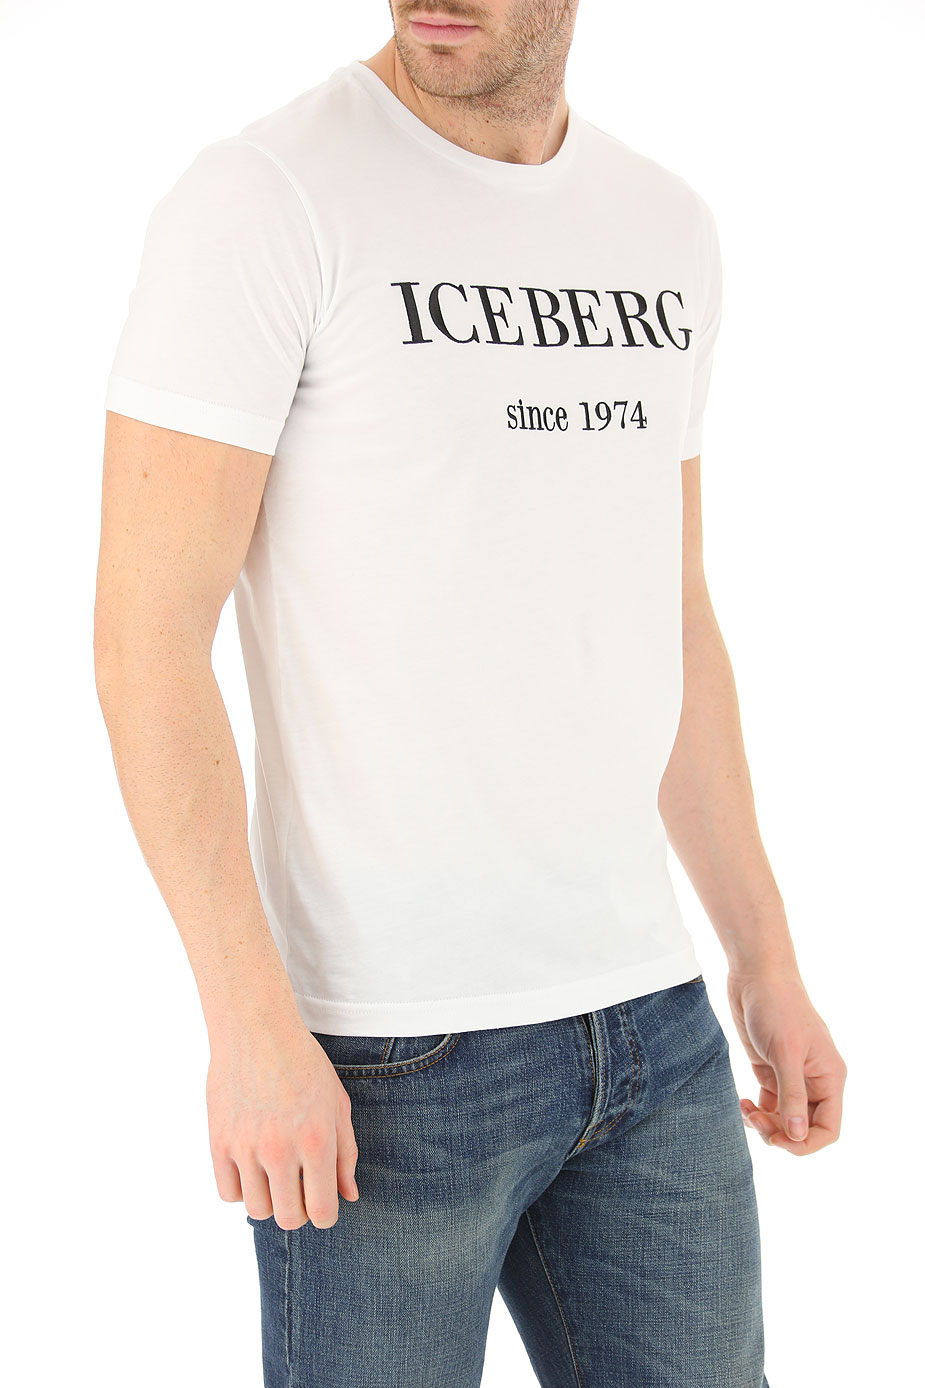 iceberg clothing 2014